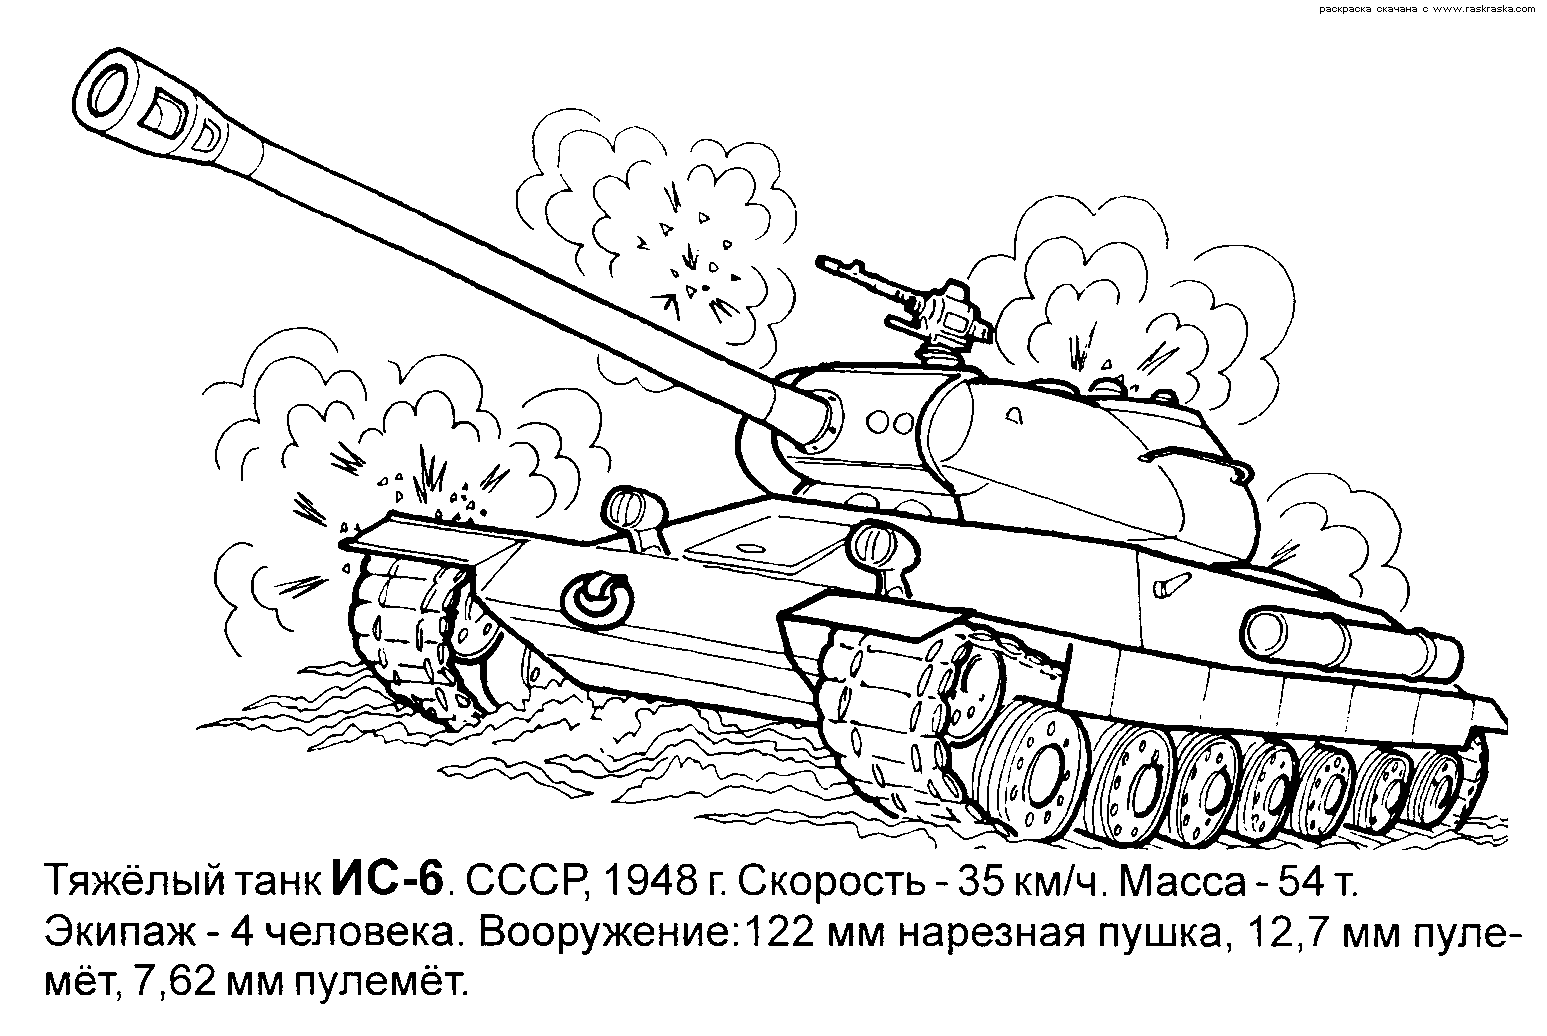 Раскраска танка в черно-белых тонах